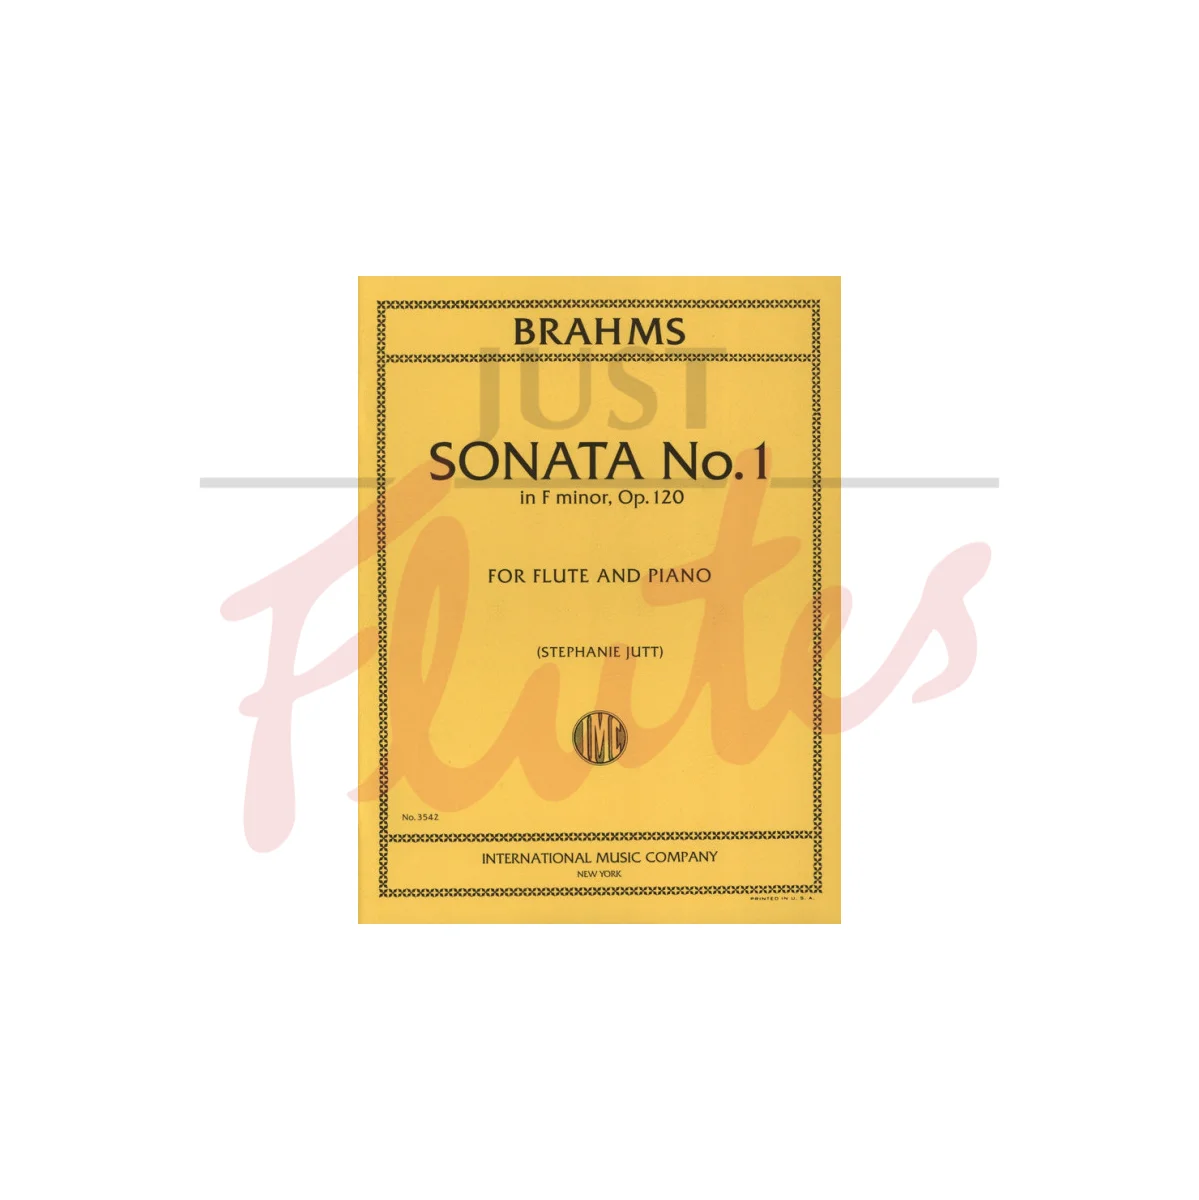 Sonata No. 1 in F minor for Flute and Piano